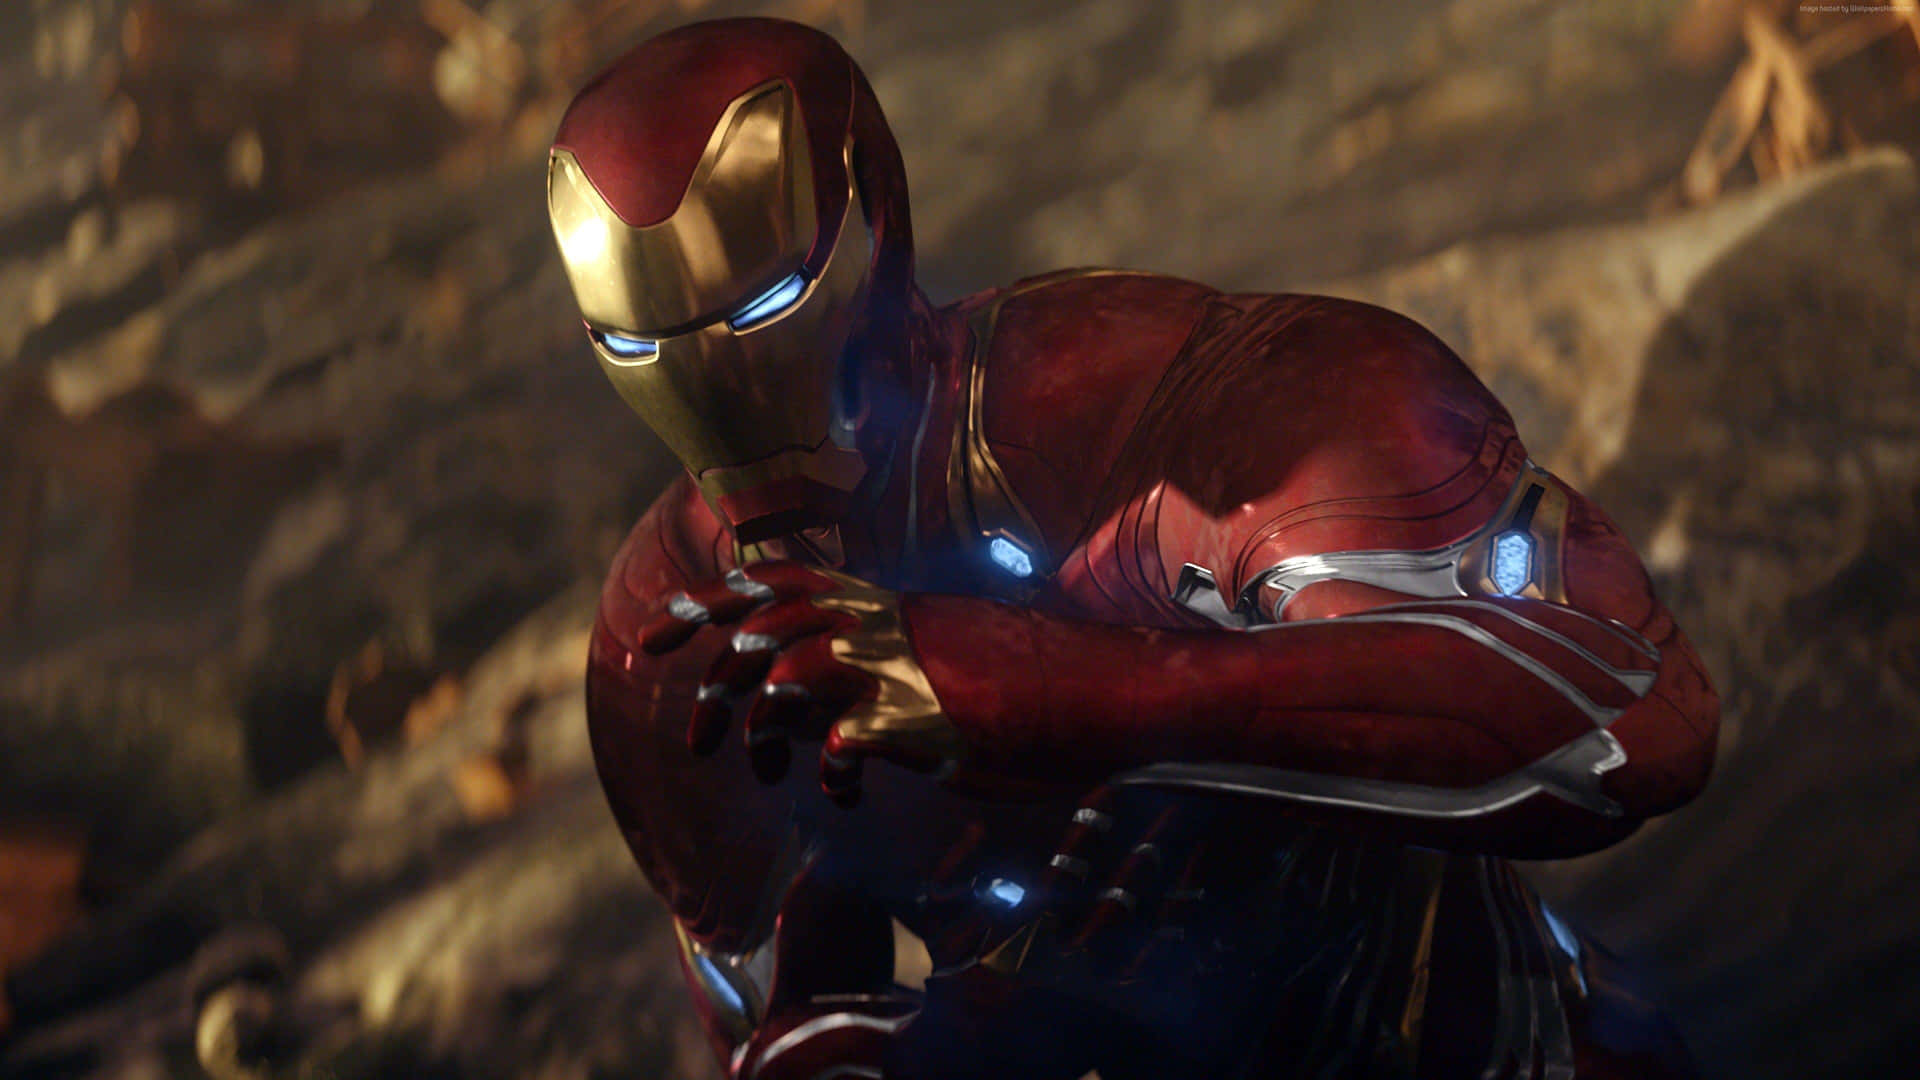 Bliv inspireret af det bedste Iron Man-film Wallpaper